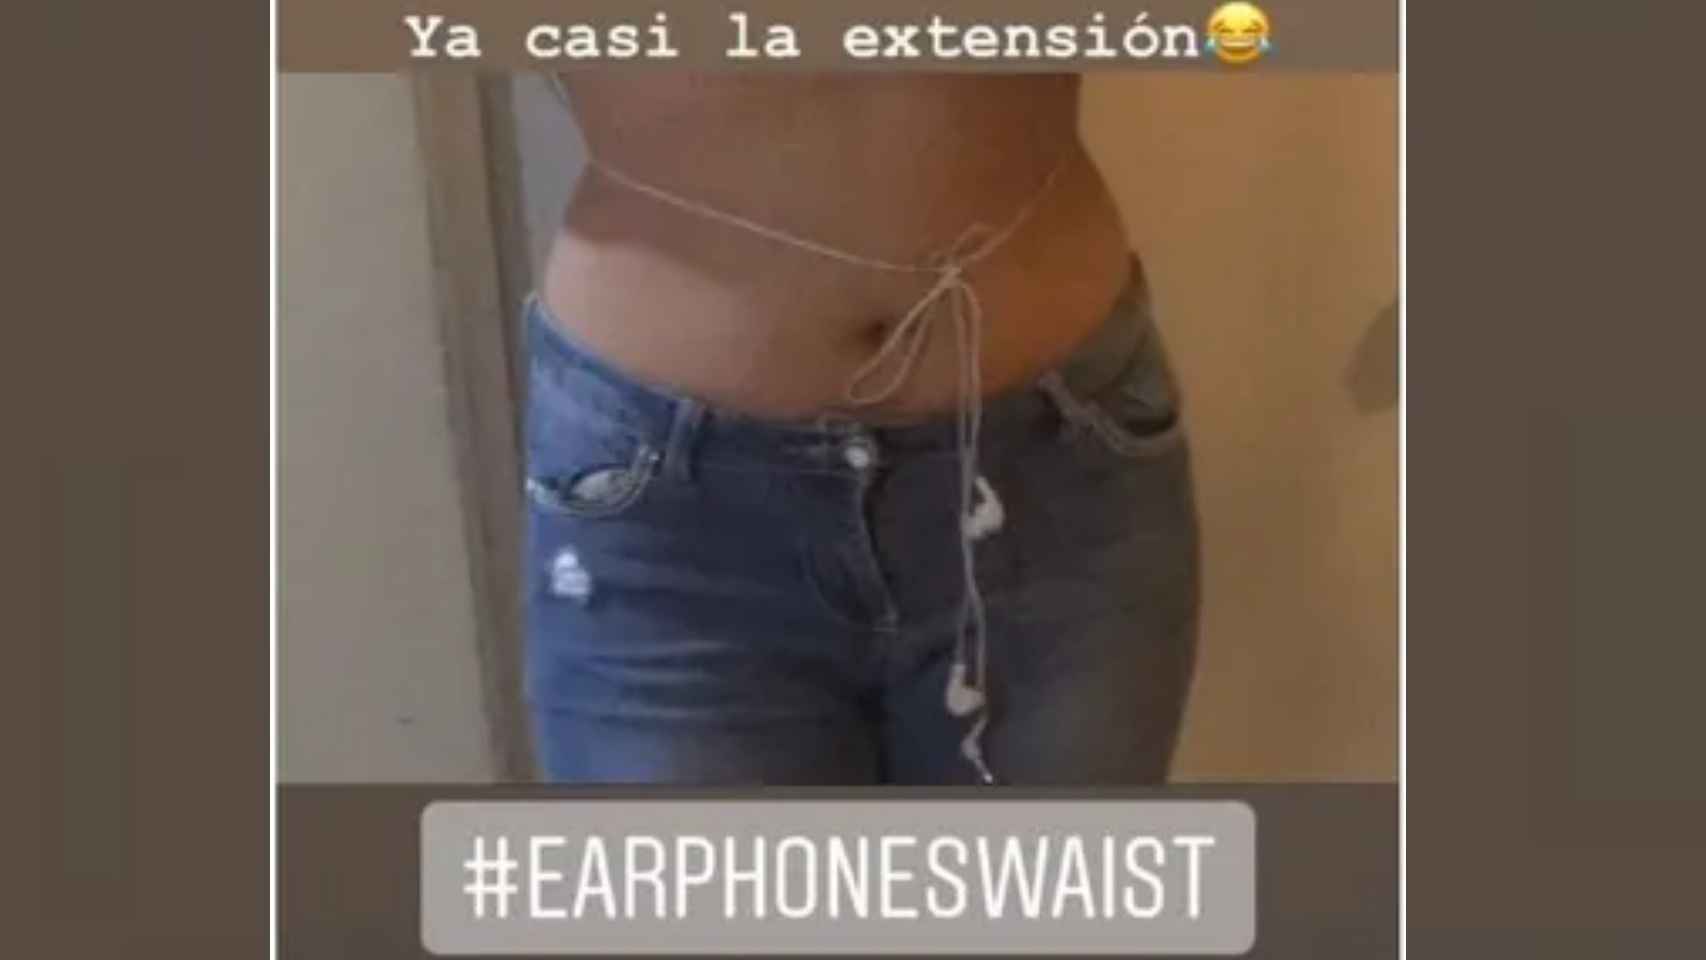 El 'earphonewaist', un reto viral de rodear la cintura con unos auriculares. Instagram.